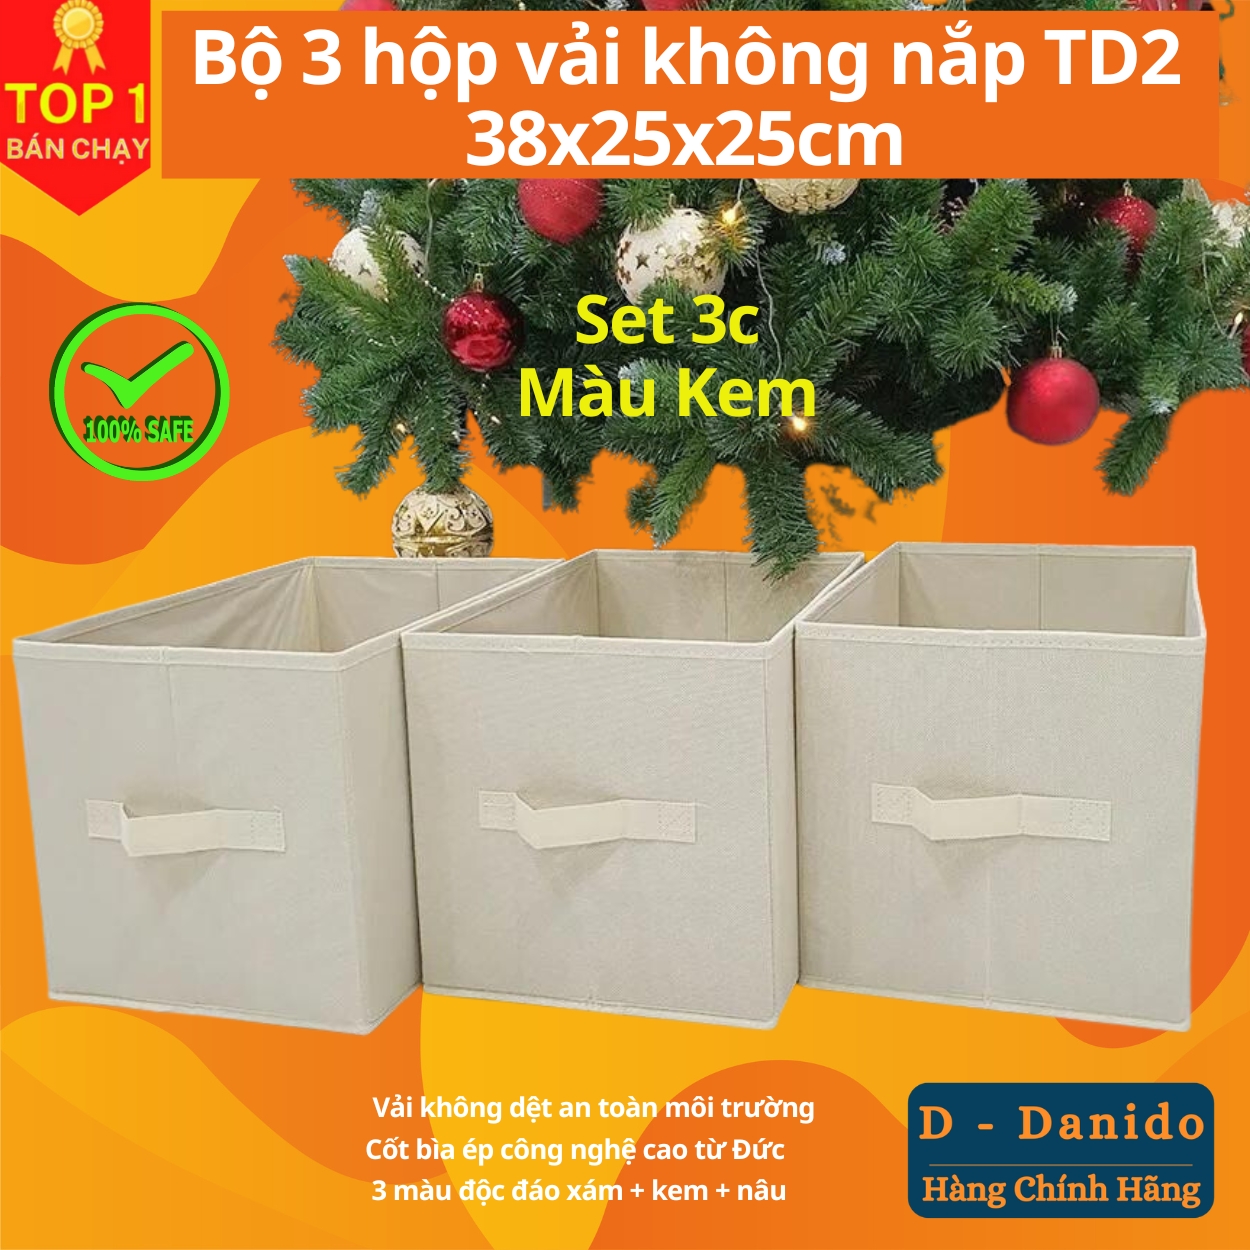 Combo 3 hộp vải đựng đồ đa năng TD2 – Bộ 3 túi vải Thụy Điển không nắp tiết kiệm sang trọng dung tích 24L mỗi hộp - chính hãng